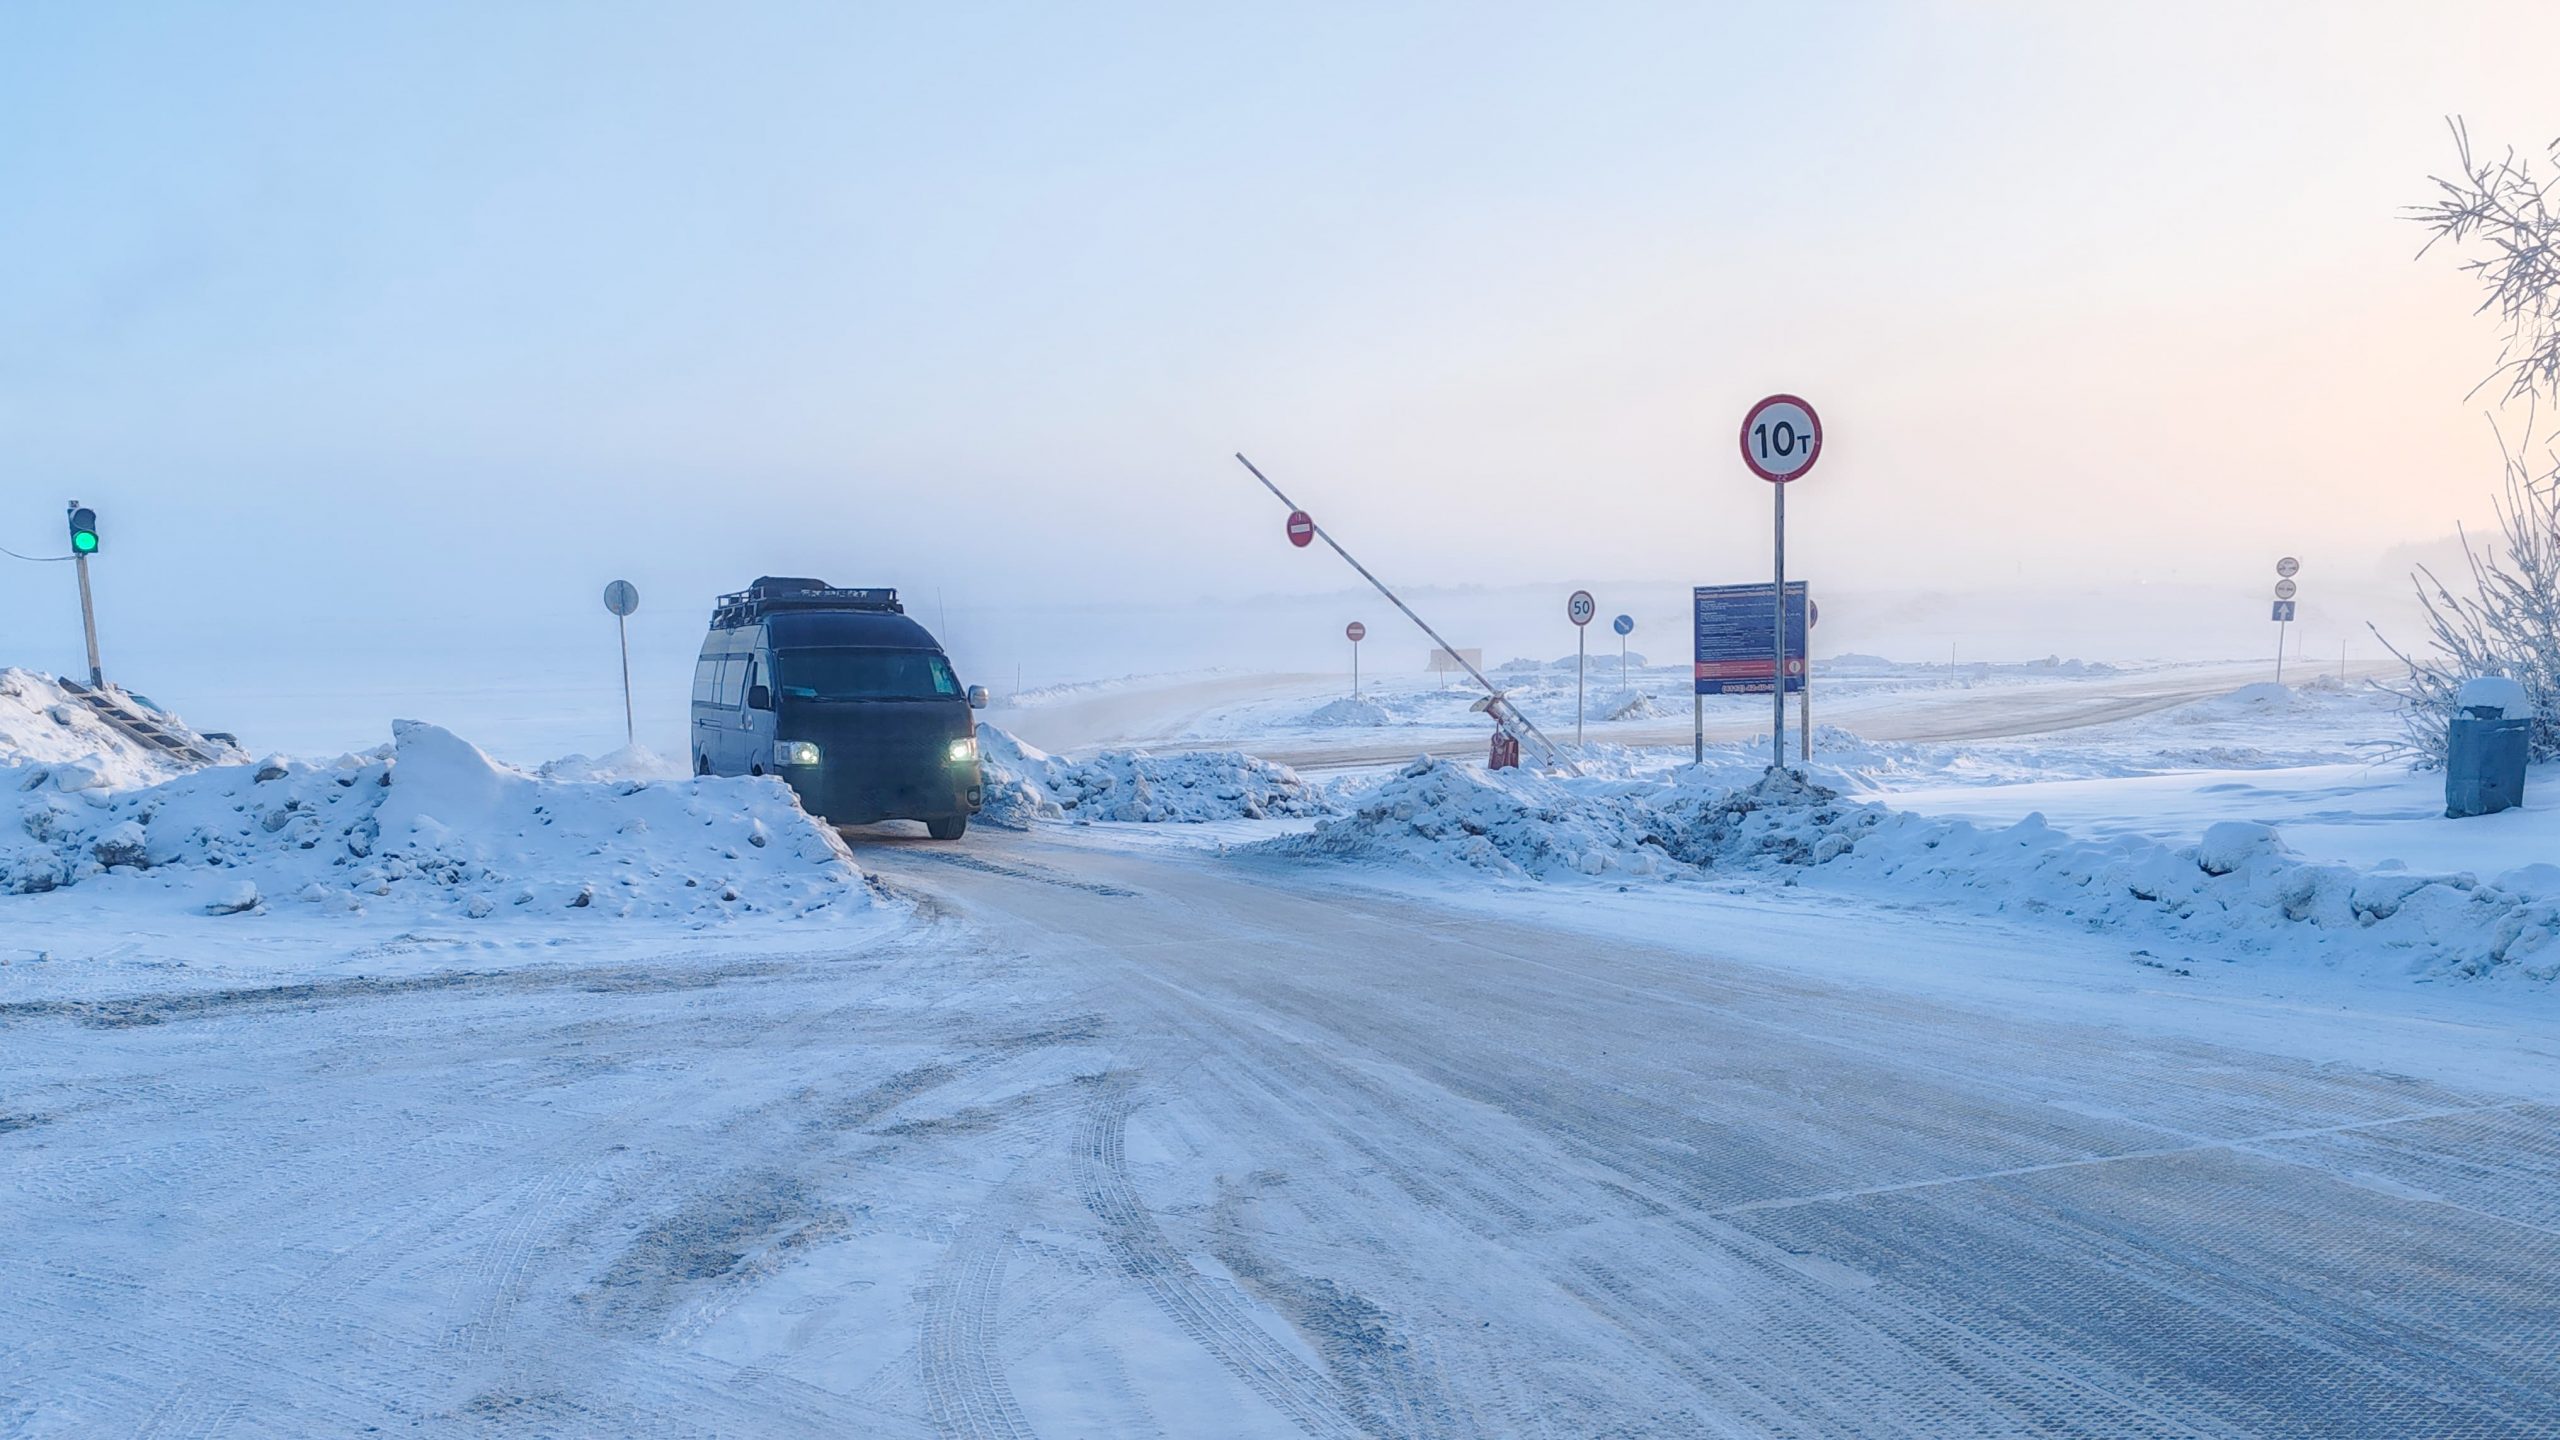 Грузоподъемность на автозимнике Якутск – Нижний Бестях увеличили до 10 тонн